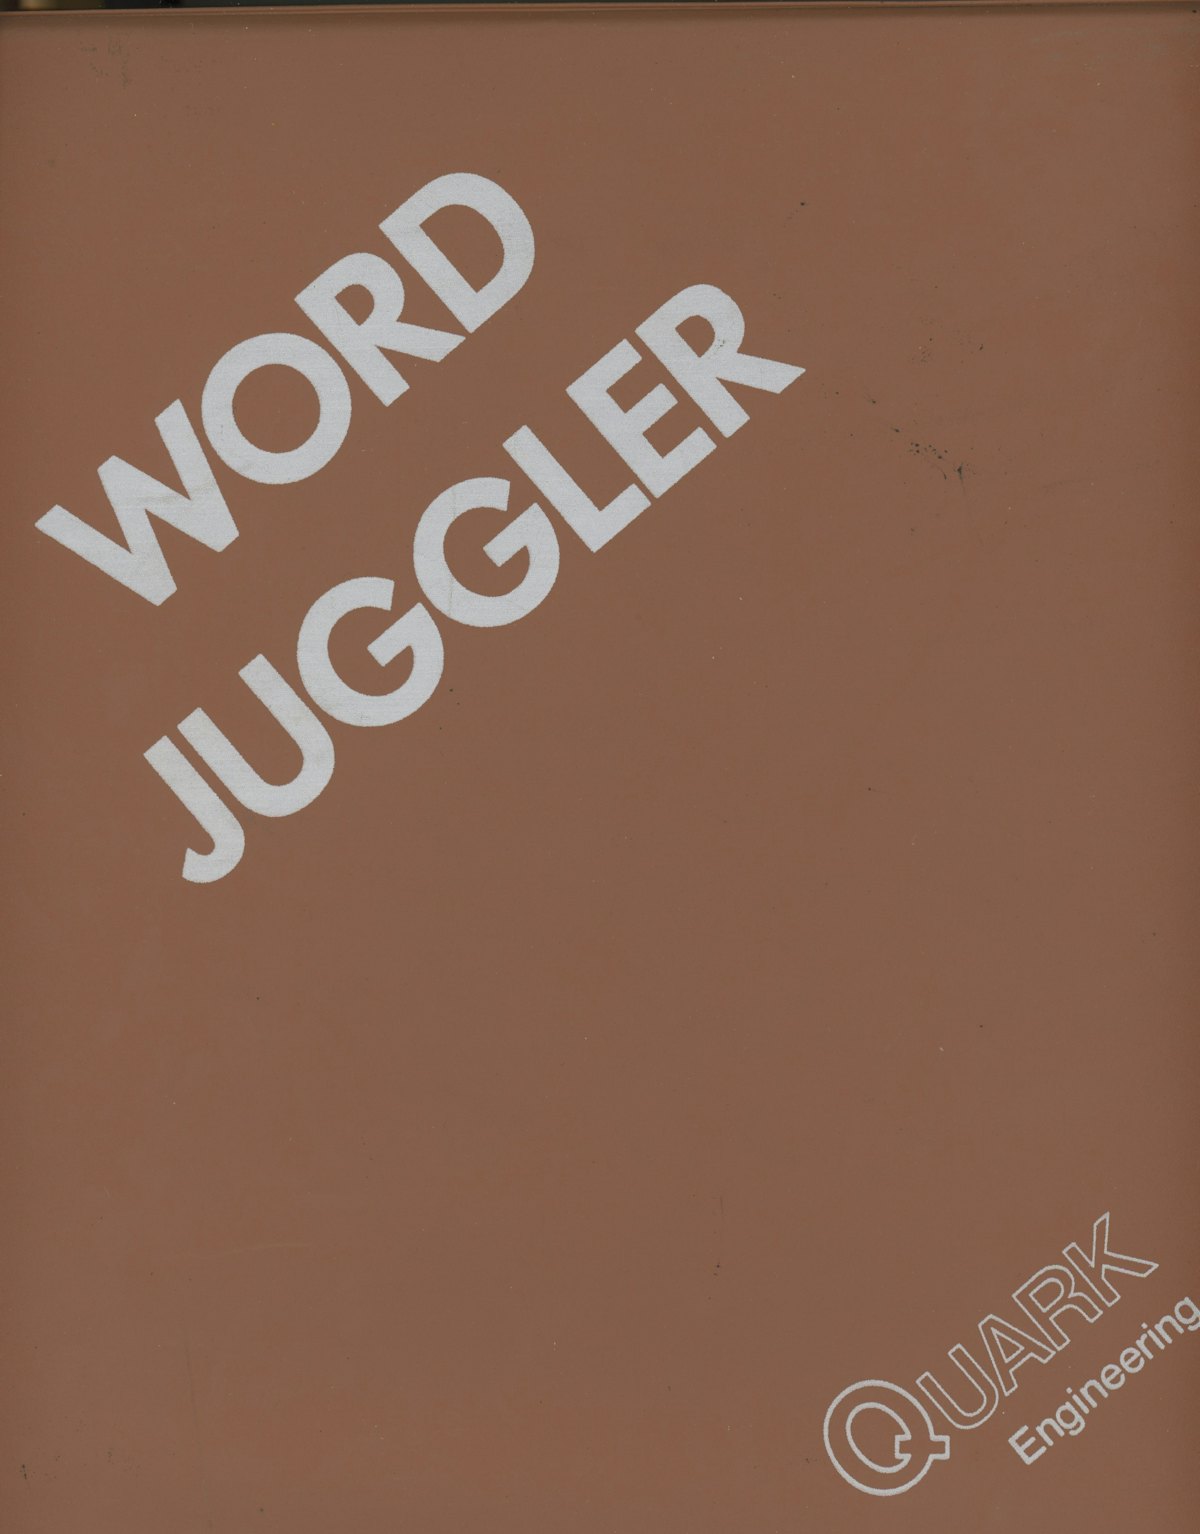 Word Juggler